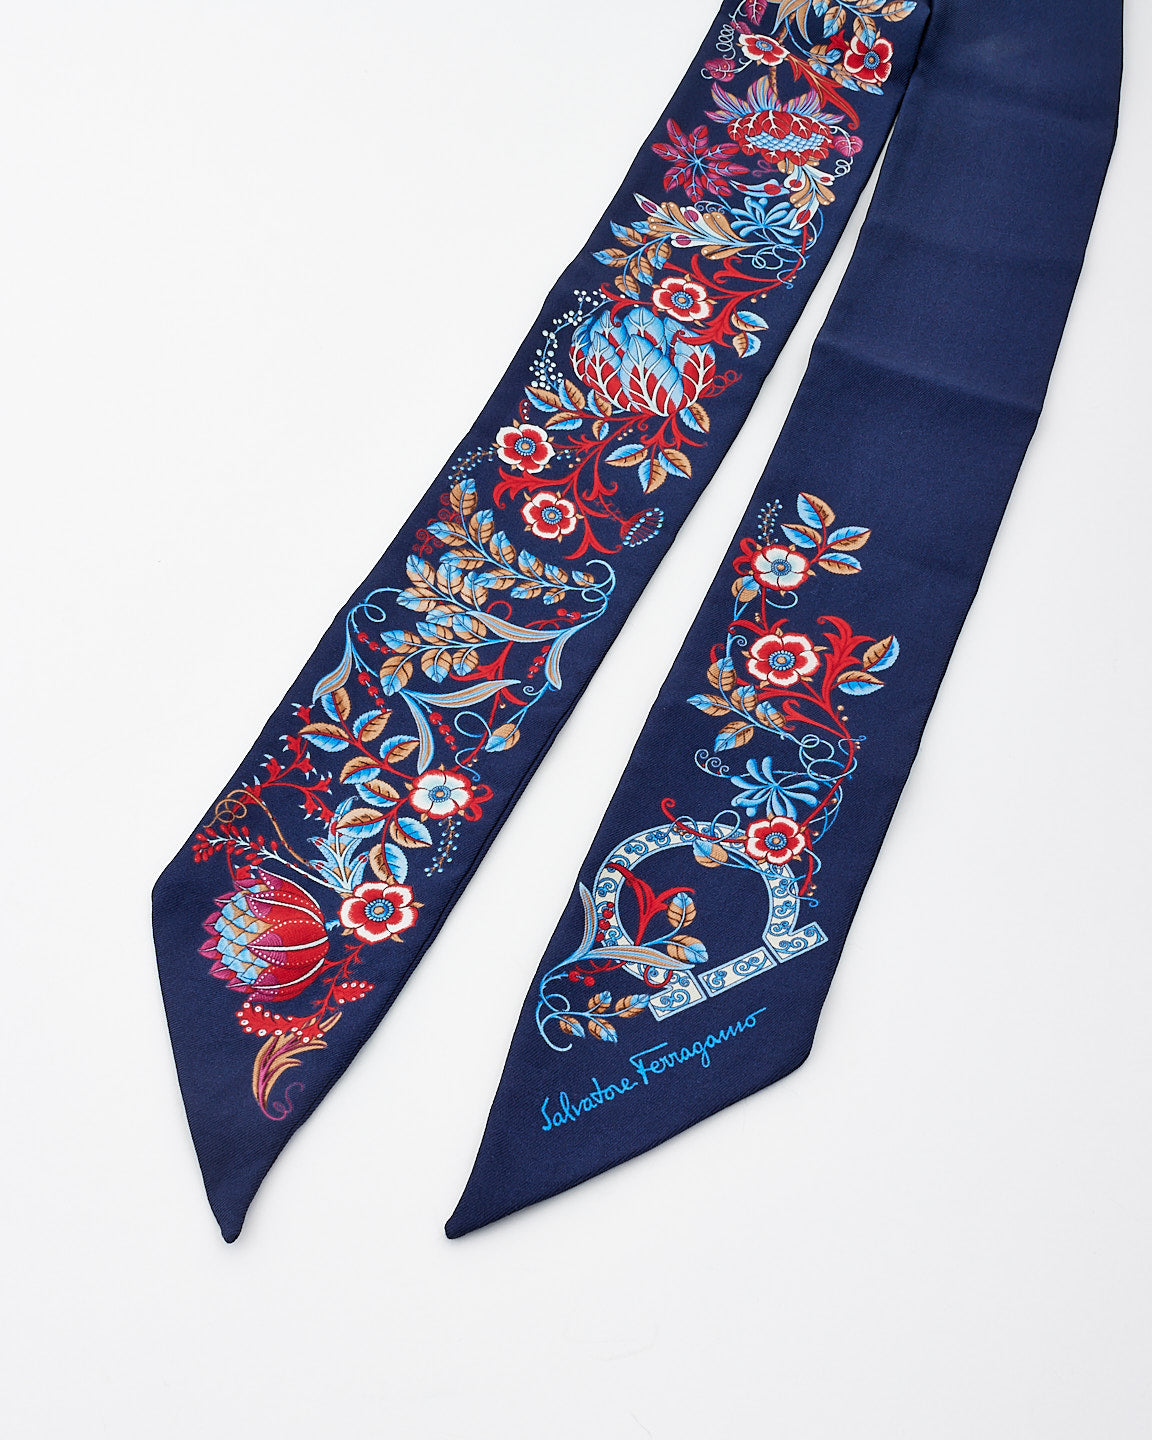 Salvatore Ferragamo Twily en soie à imprimé floral bleu marine et multicolore